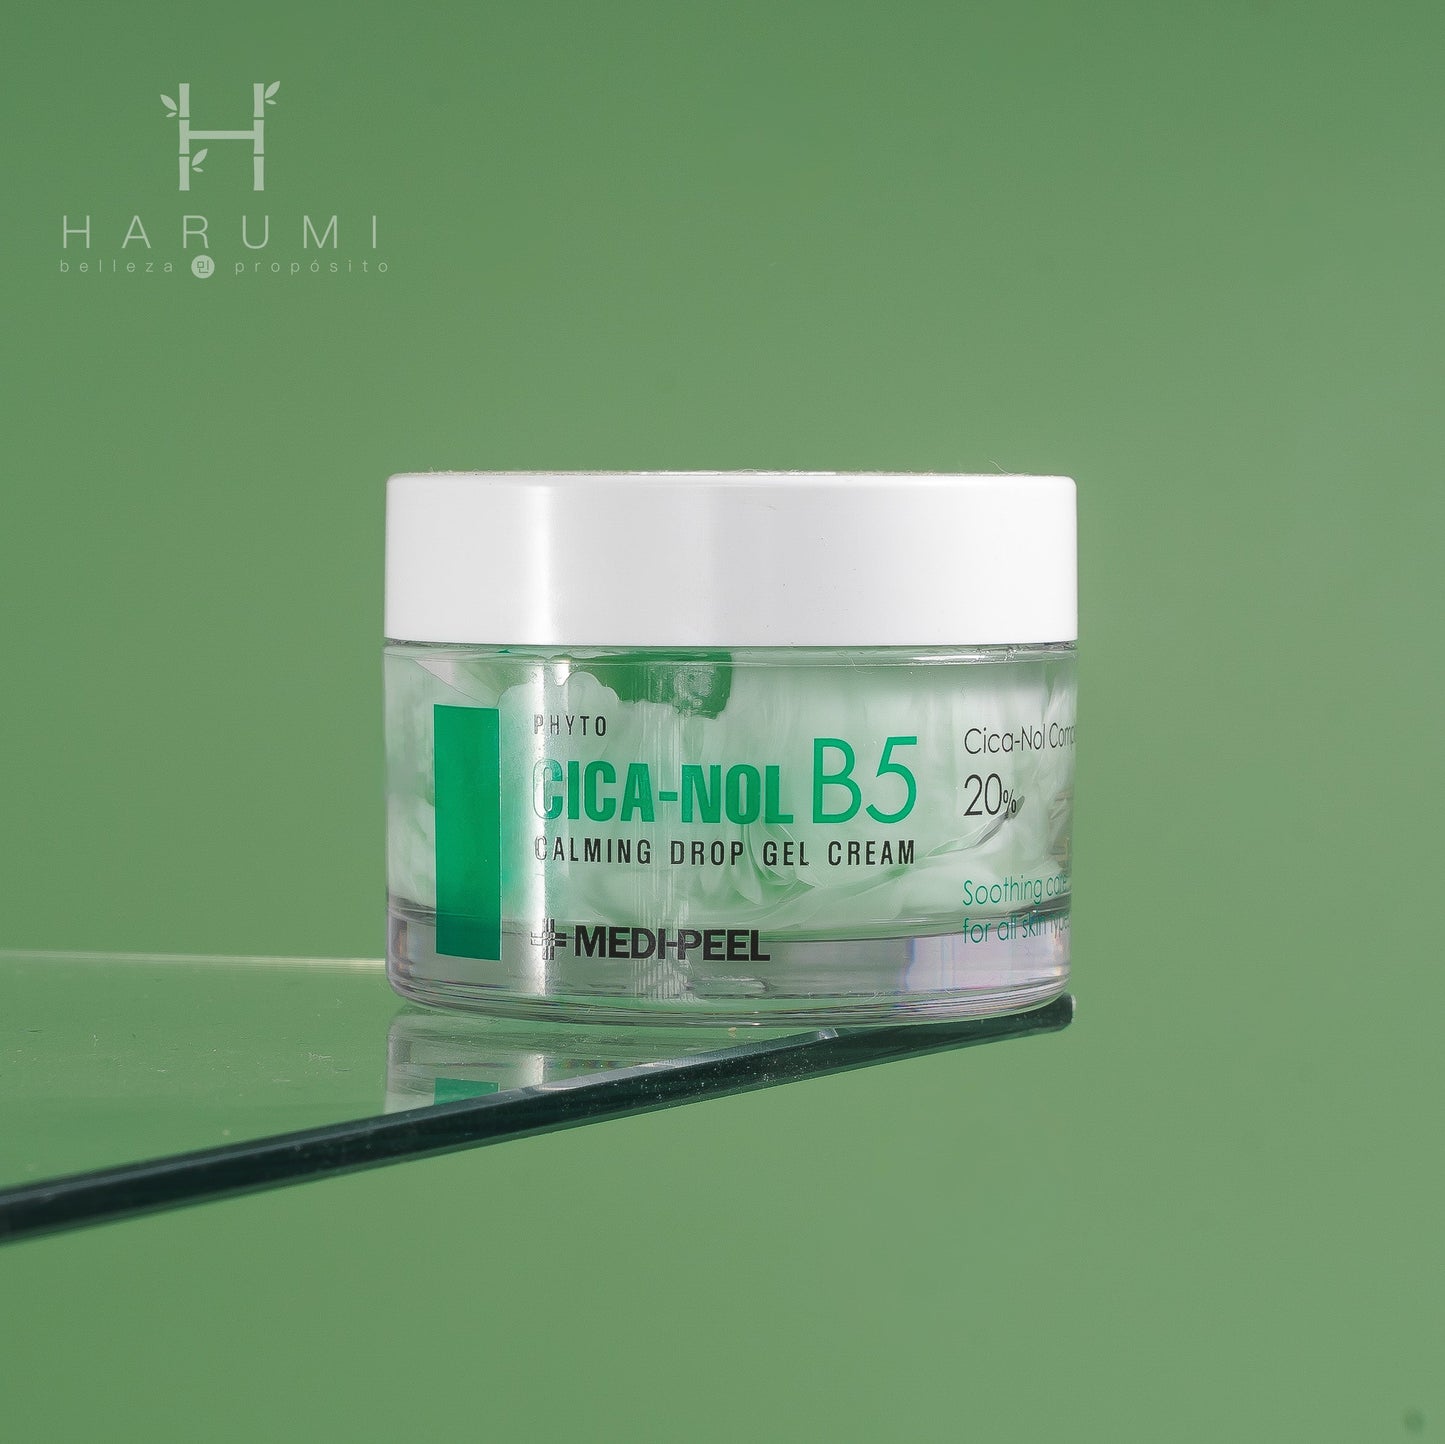 Medipeel Phyto Cica-Nol B5 Calming Drop Gel Cream Skincare maquillaje productos de belleza coreanos en Colombia kbeauty